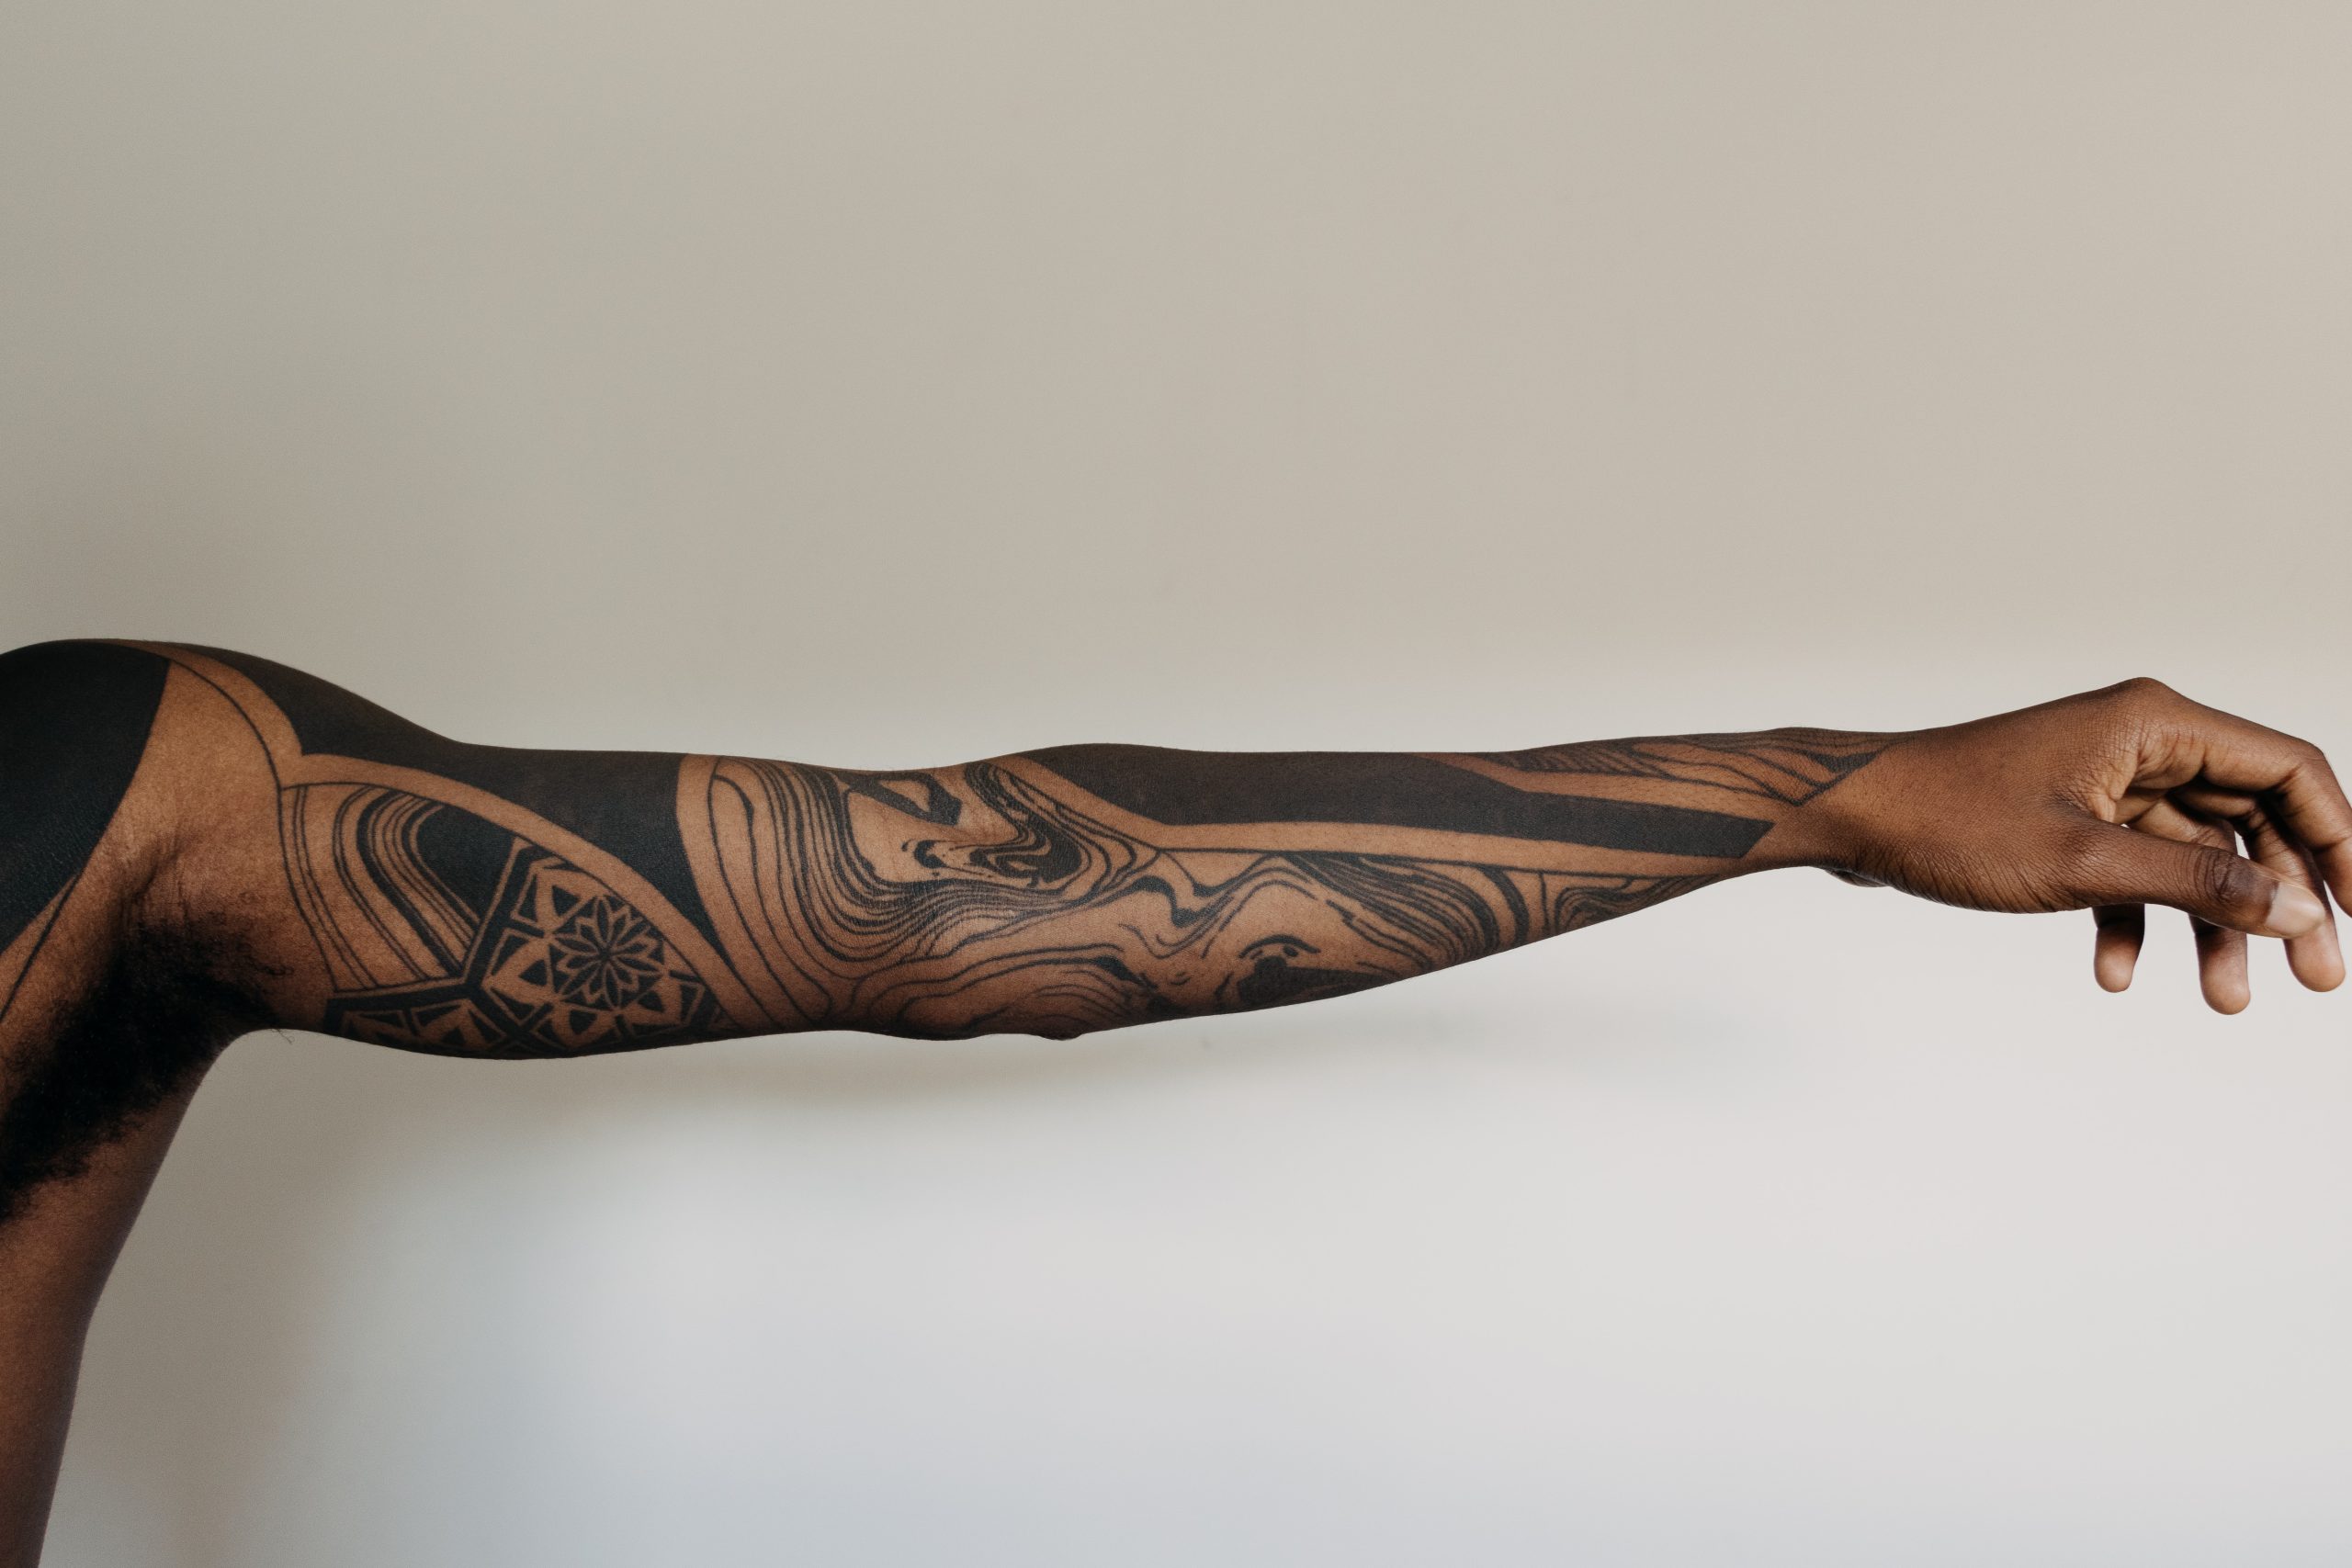 Tatuaże i ich znaczenie w różnych kulturach